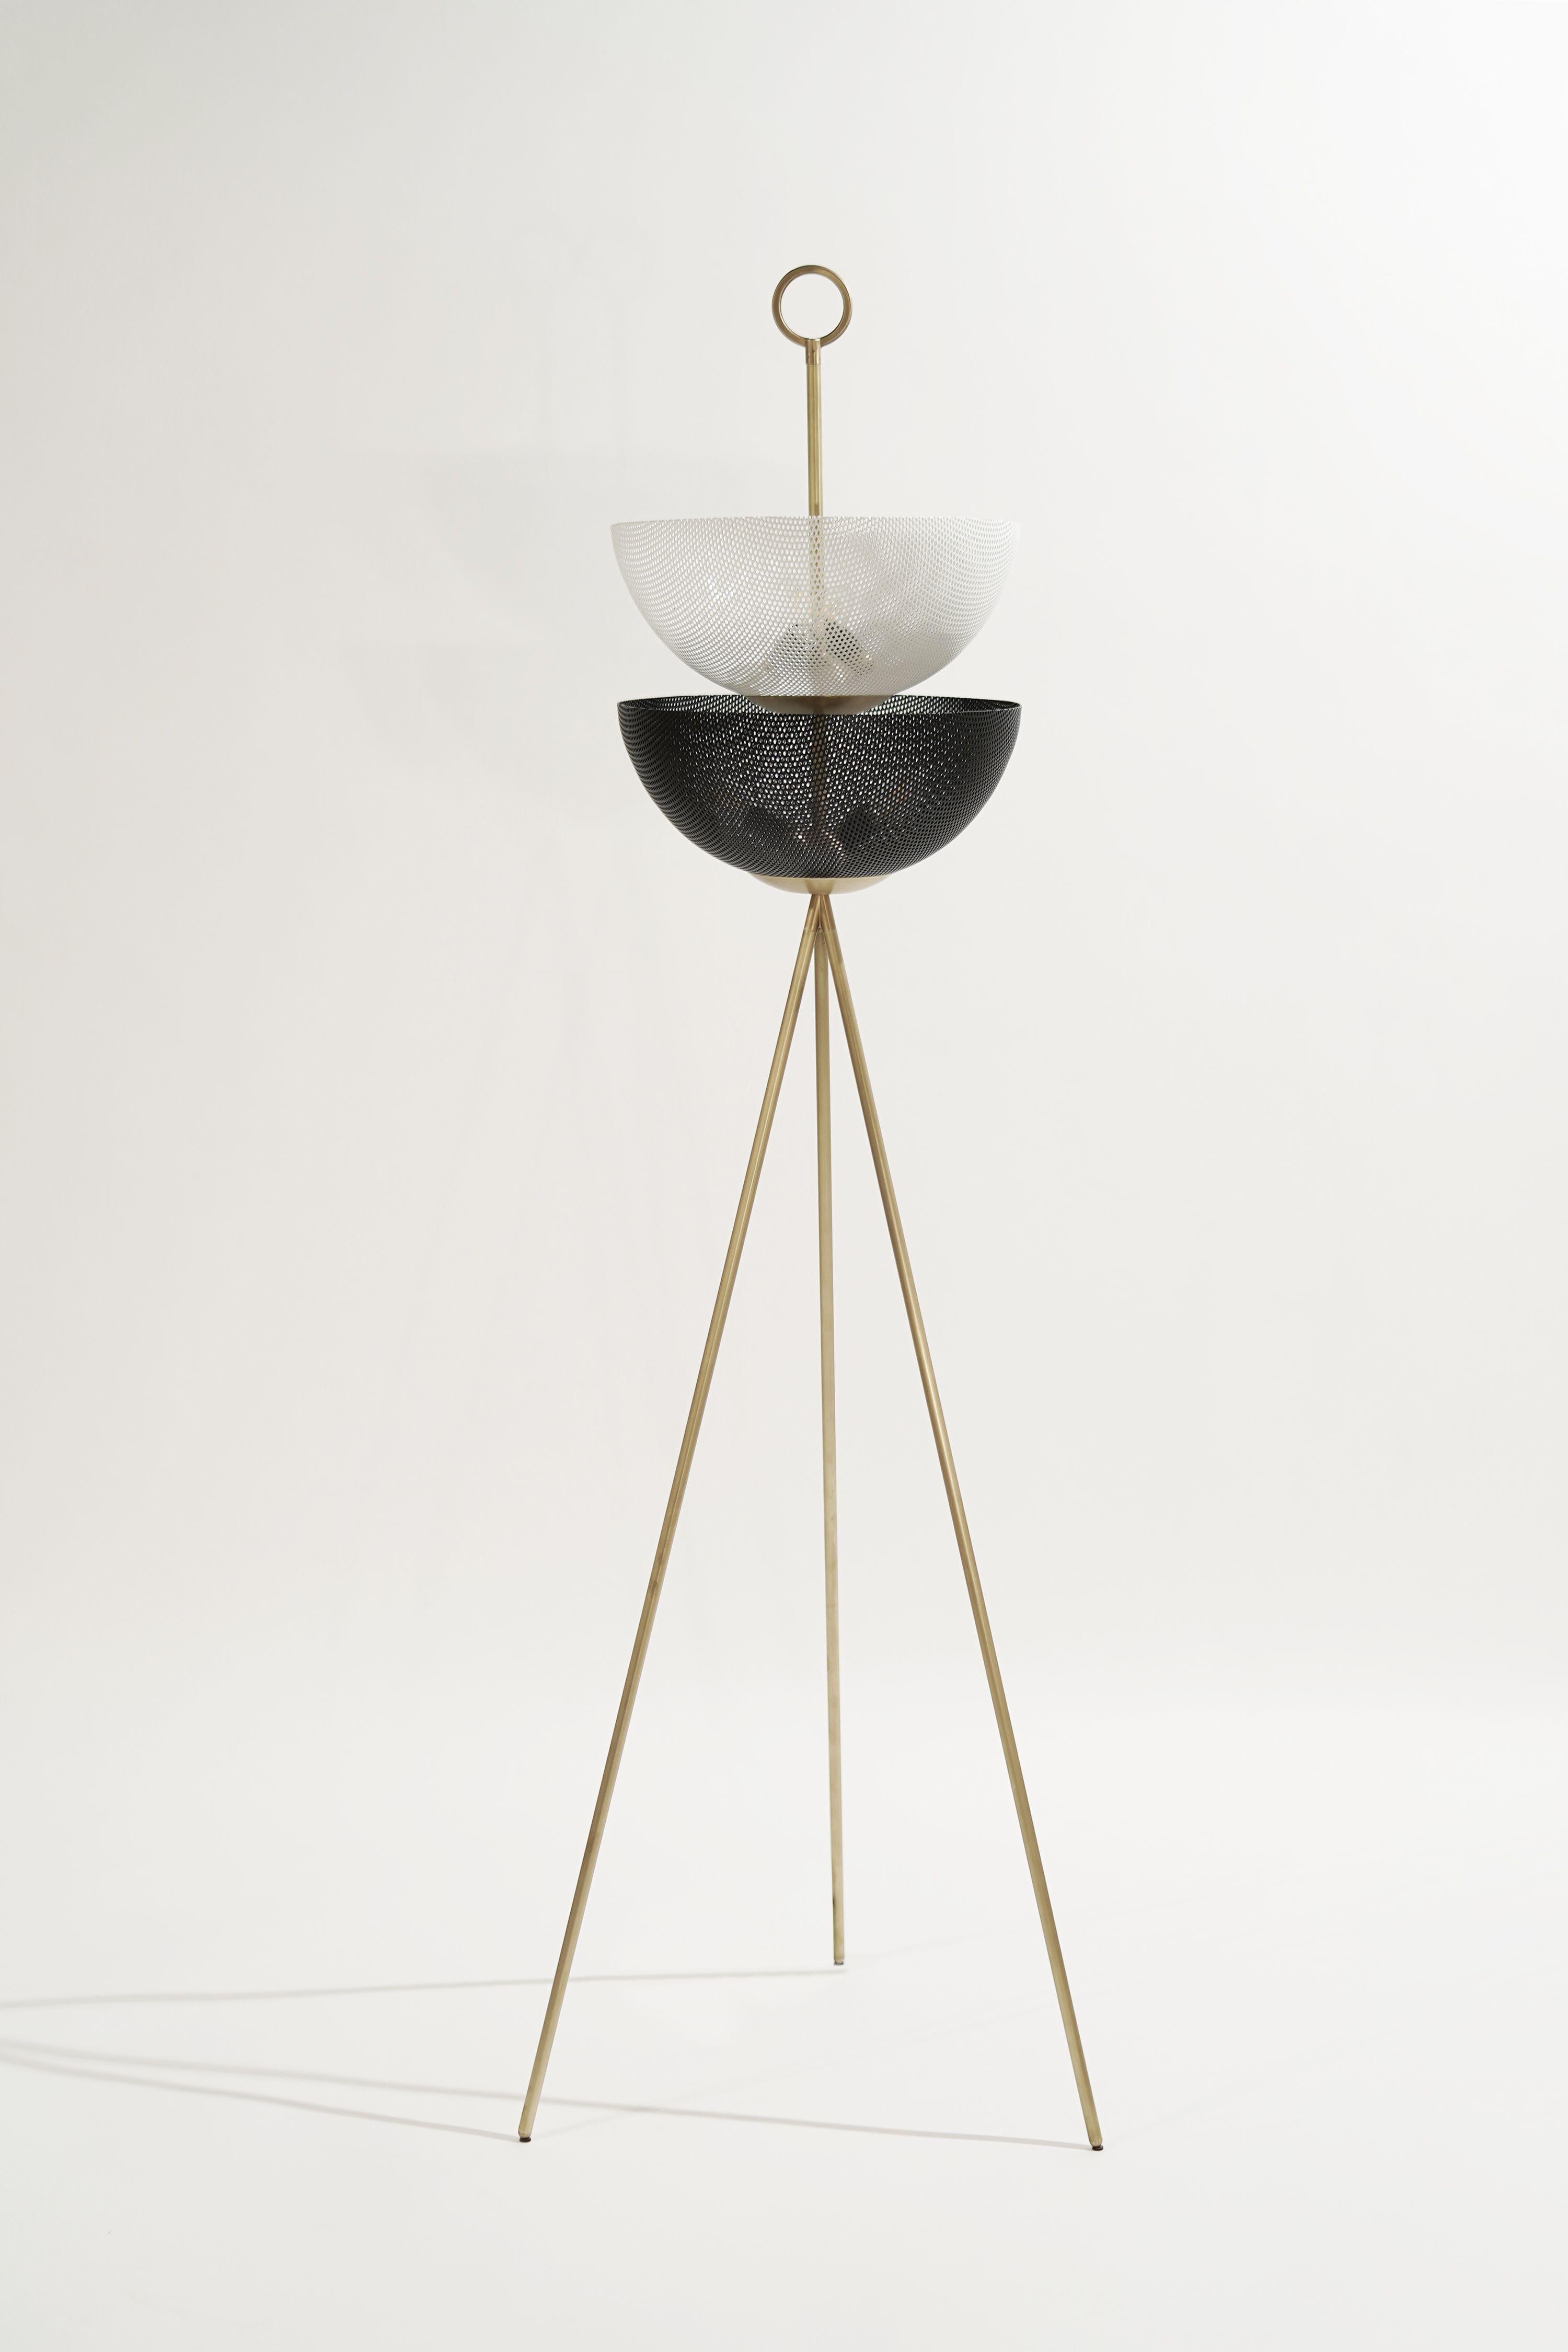 Voici le lampadaire Bonbon, une confection lumineuse conçue par Blueprint Lighting, 2021. Fabriqué avec des abat-jour en maille de métal filé et une base tripode en laiton. Un anneau de finition en laiton massif, inspiré de Tommi Parzinger, vient